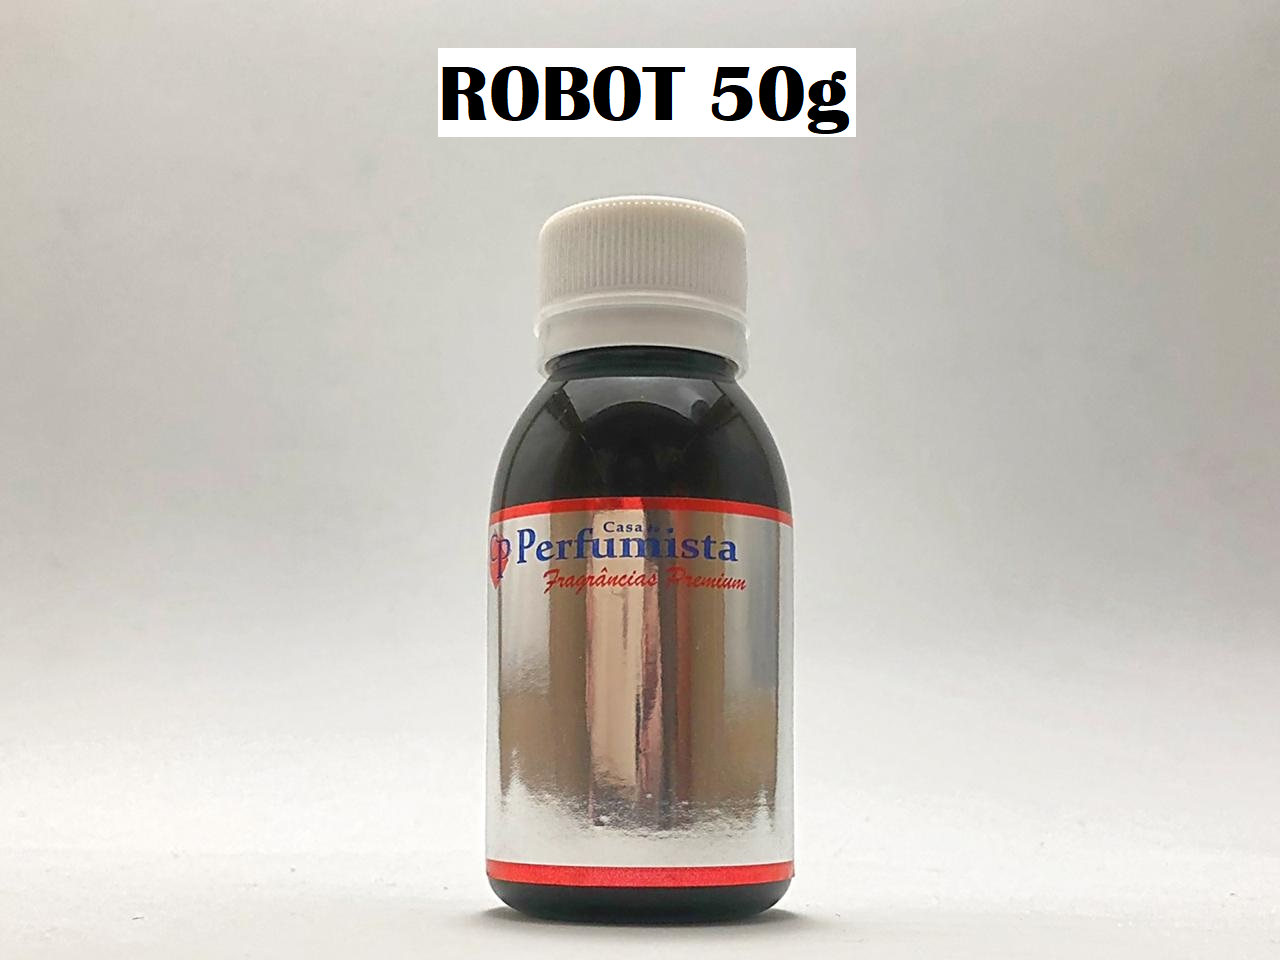 ROBOT 50g - Inspiração: Phanton Masculino